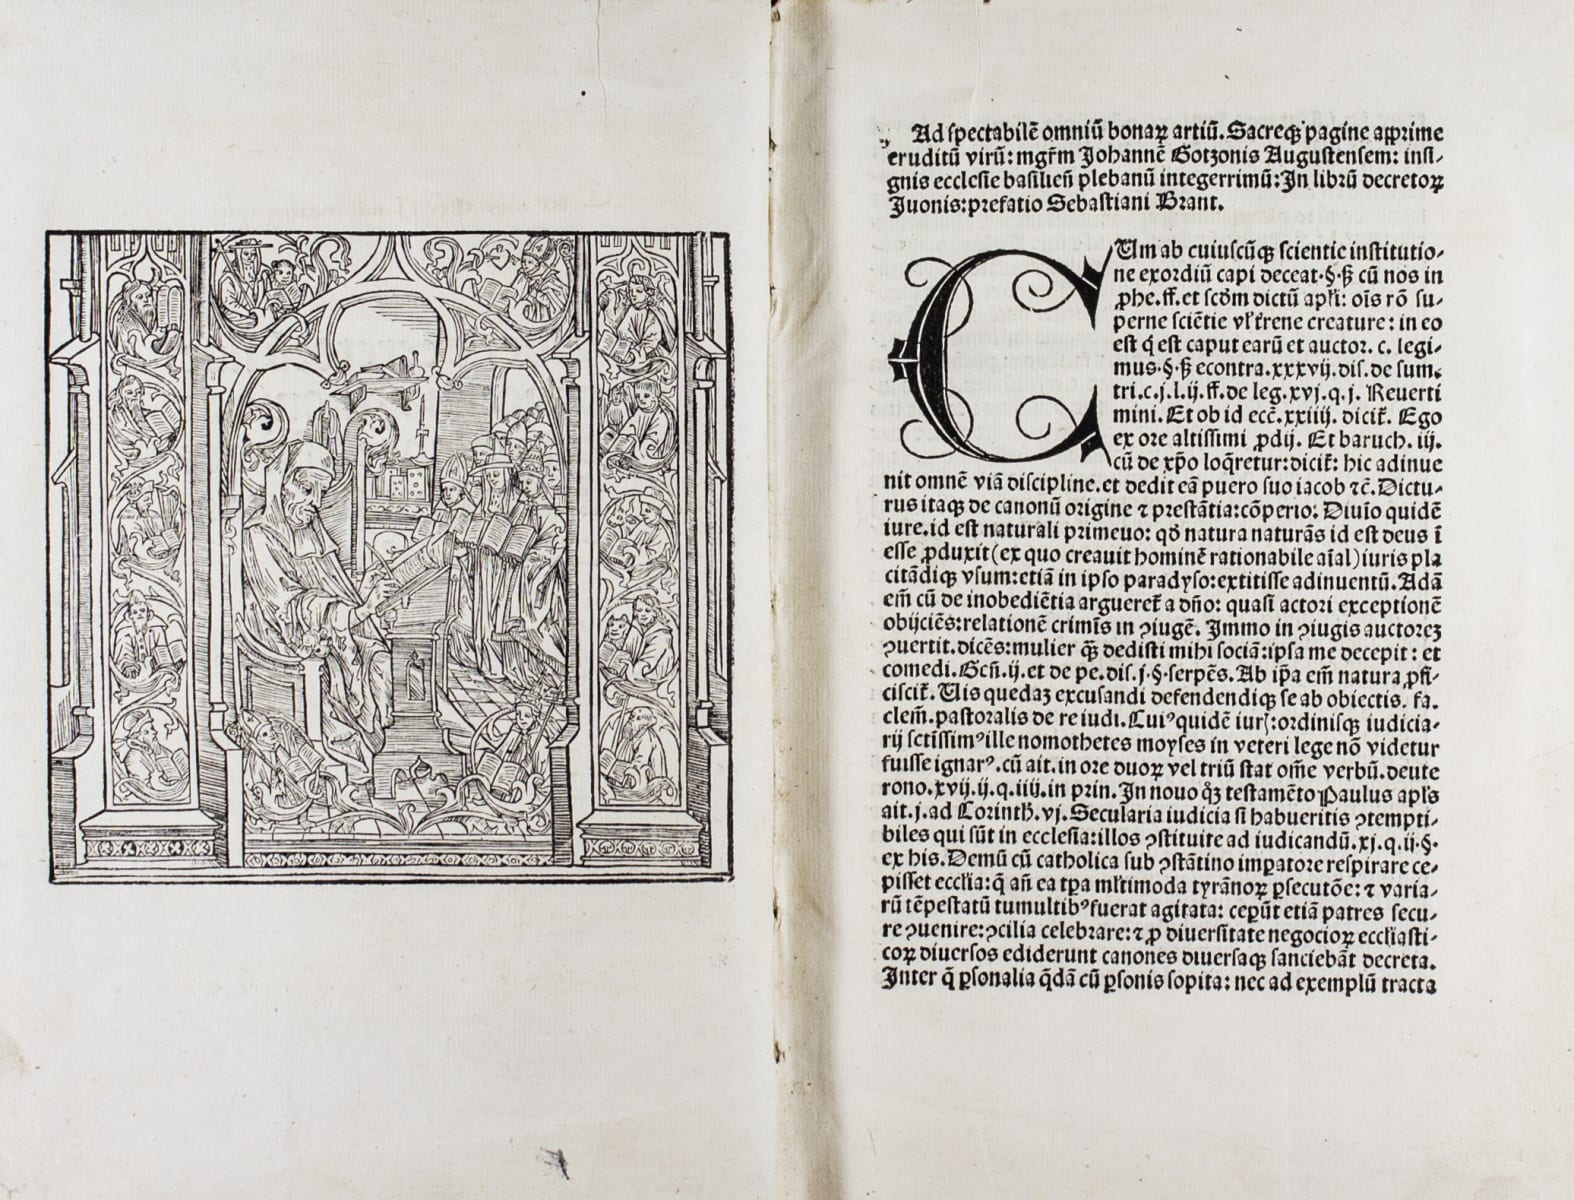 Image of a page in Liber decretorum siue Panormia Iuonis accurato labore summoque studio in vnum redacta continens